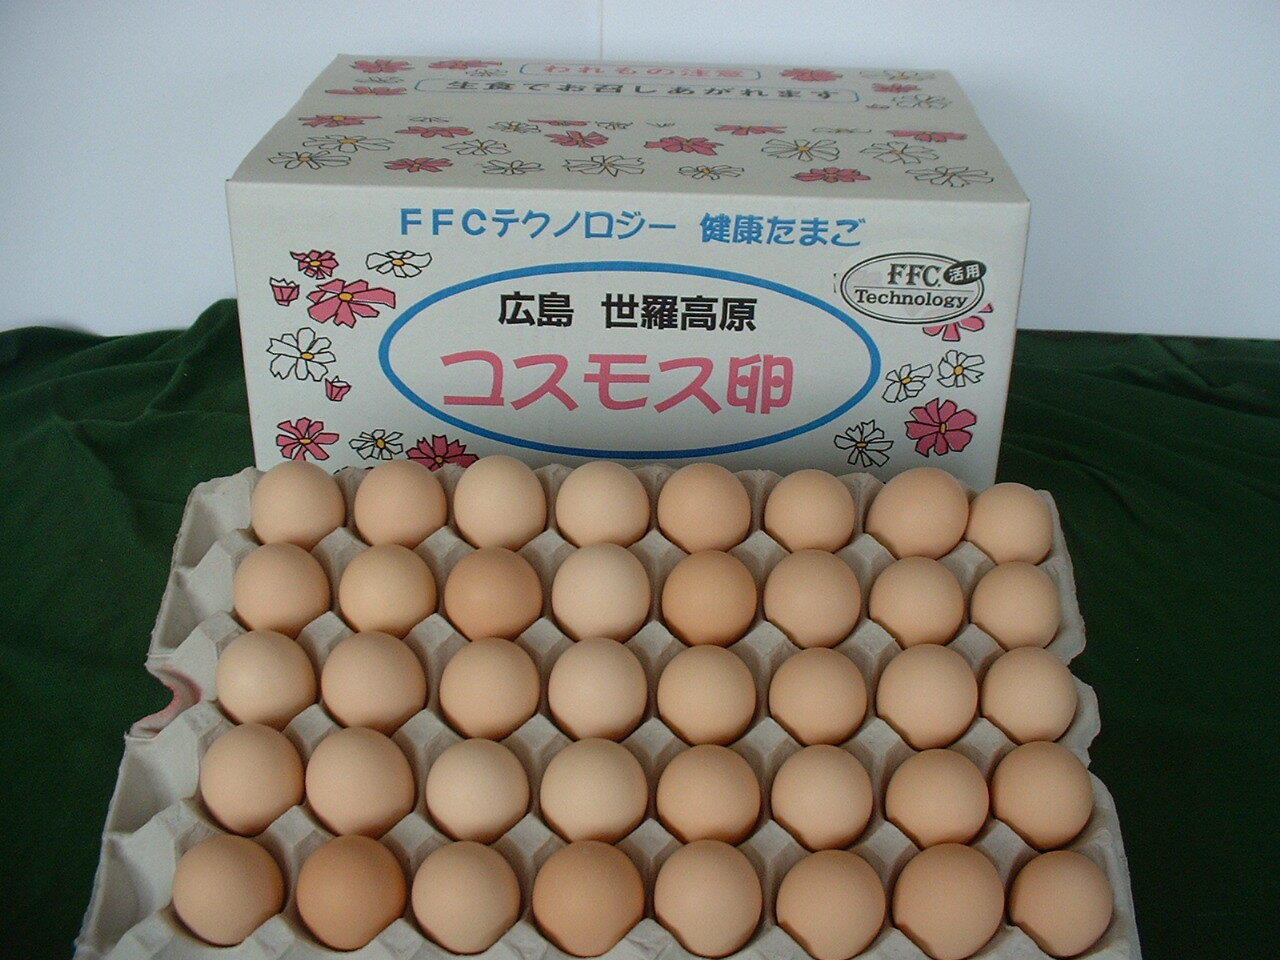 高級卵 くさみのないたまご たまご10個×14 巣ごもり究極の卵 免疫アップ 濃厚です 朝採れ 採れたて 生みたて 長崎産 おいしい自然卵 ブランド卵